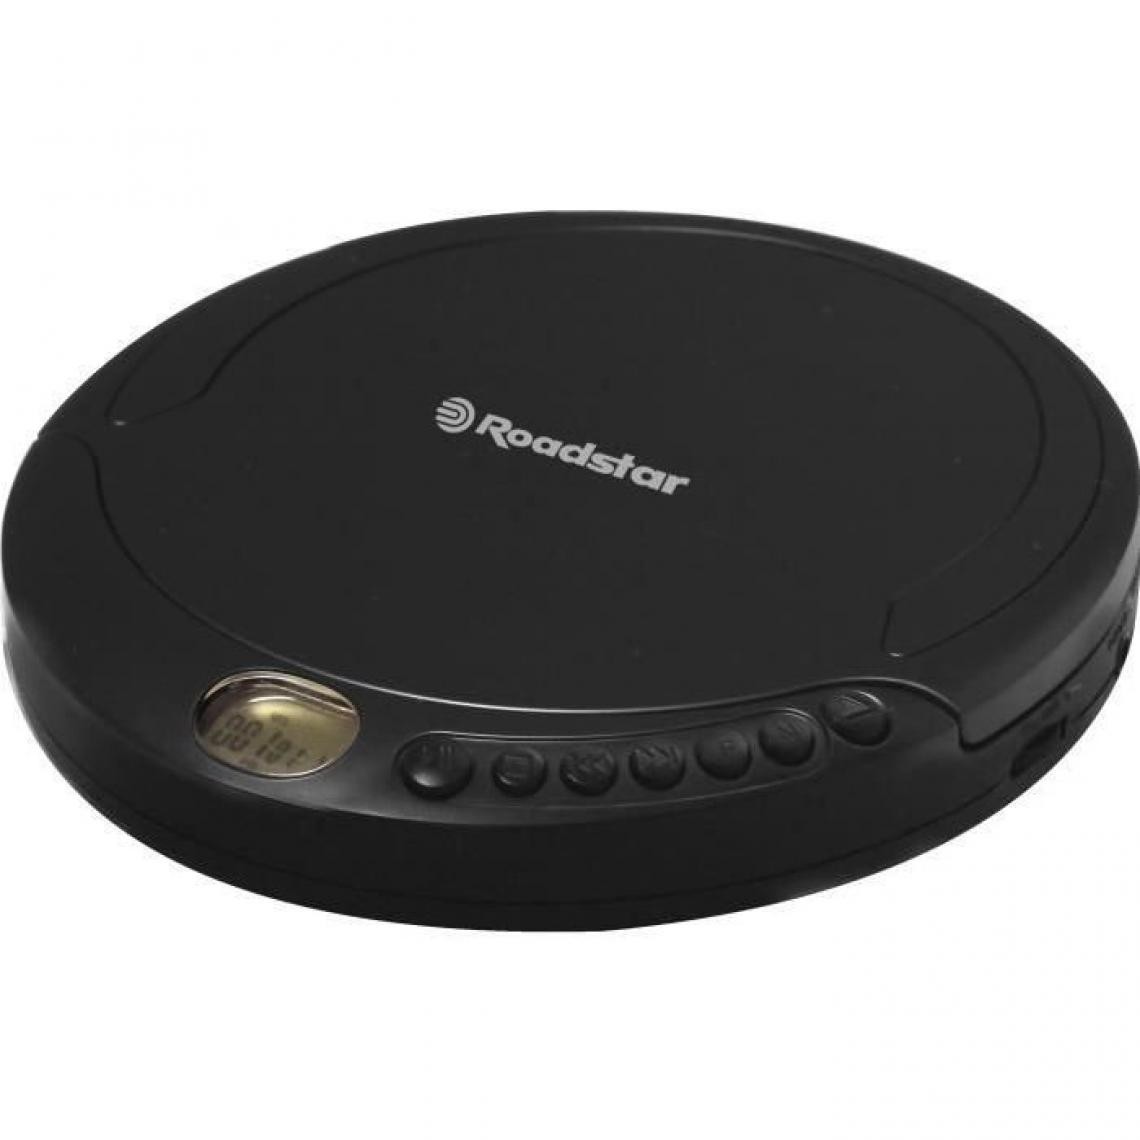 Roadstar - ROADSTAR PCD 498 Baladeur CD MP3 - Affichage LCD Anti Shock 120s - Casque De Haute Qualité Avec Adaptateur Secteur - Radio